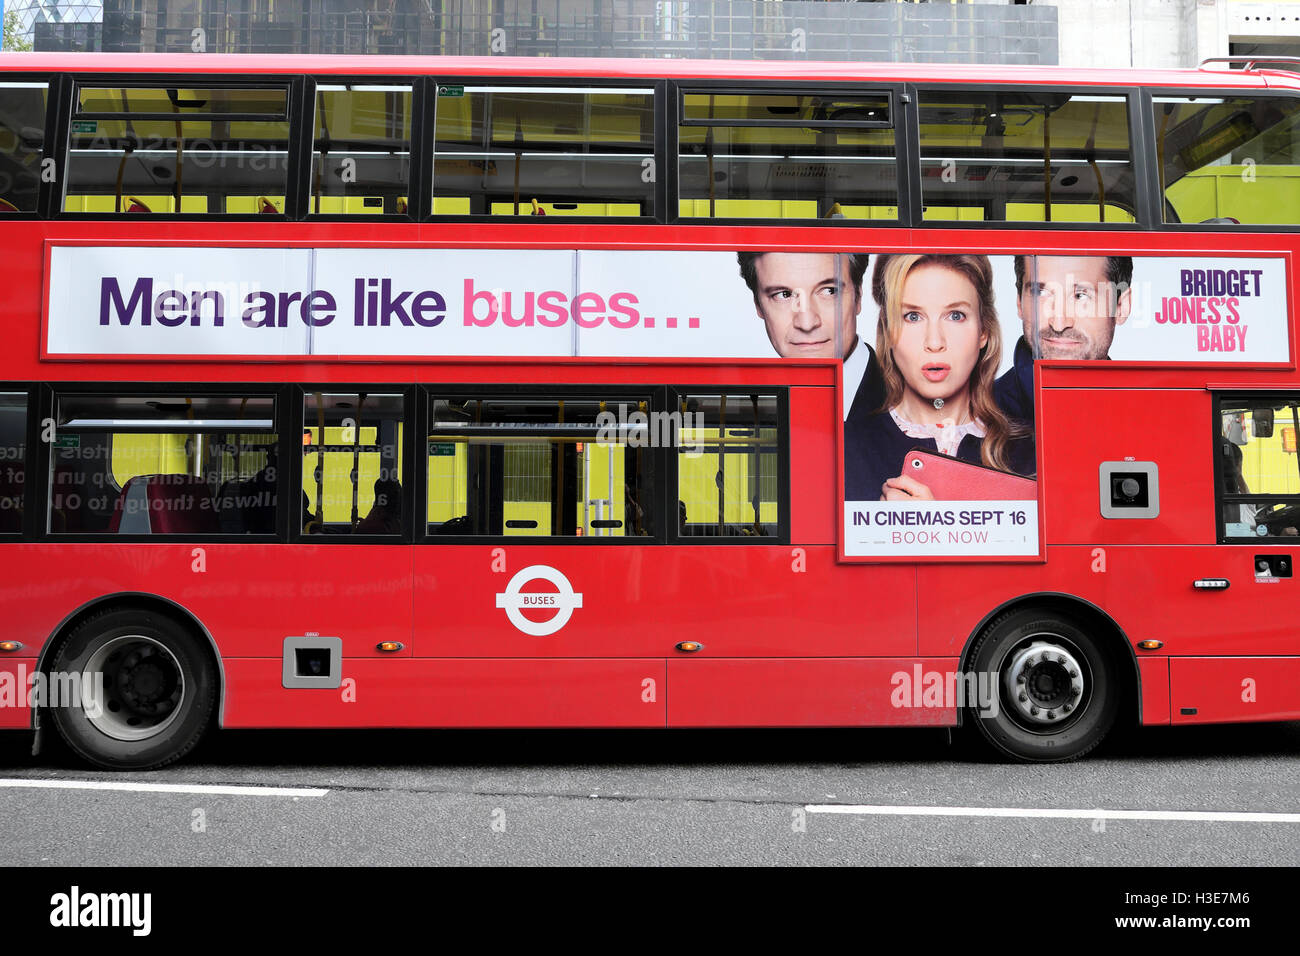 "Les hommes sont comme les autobus' Bébé Bridget Jones film annonce sur le côté d'un double-decker rouge UK London bus KATHY DEWITT Banque D'Images